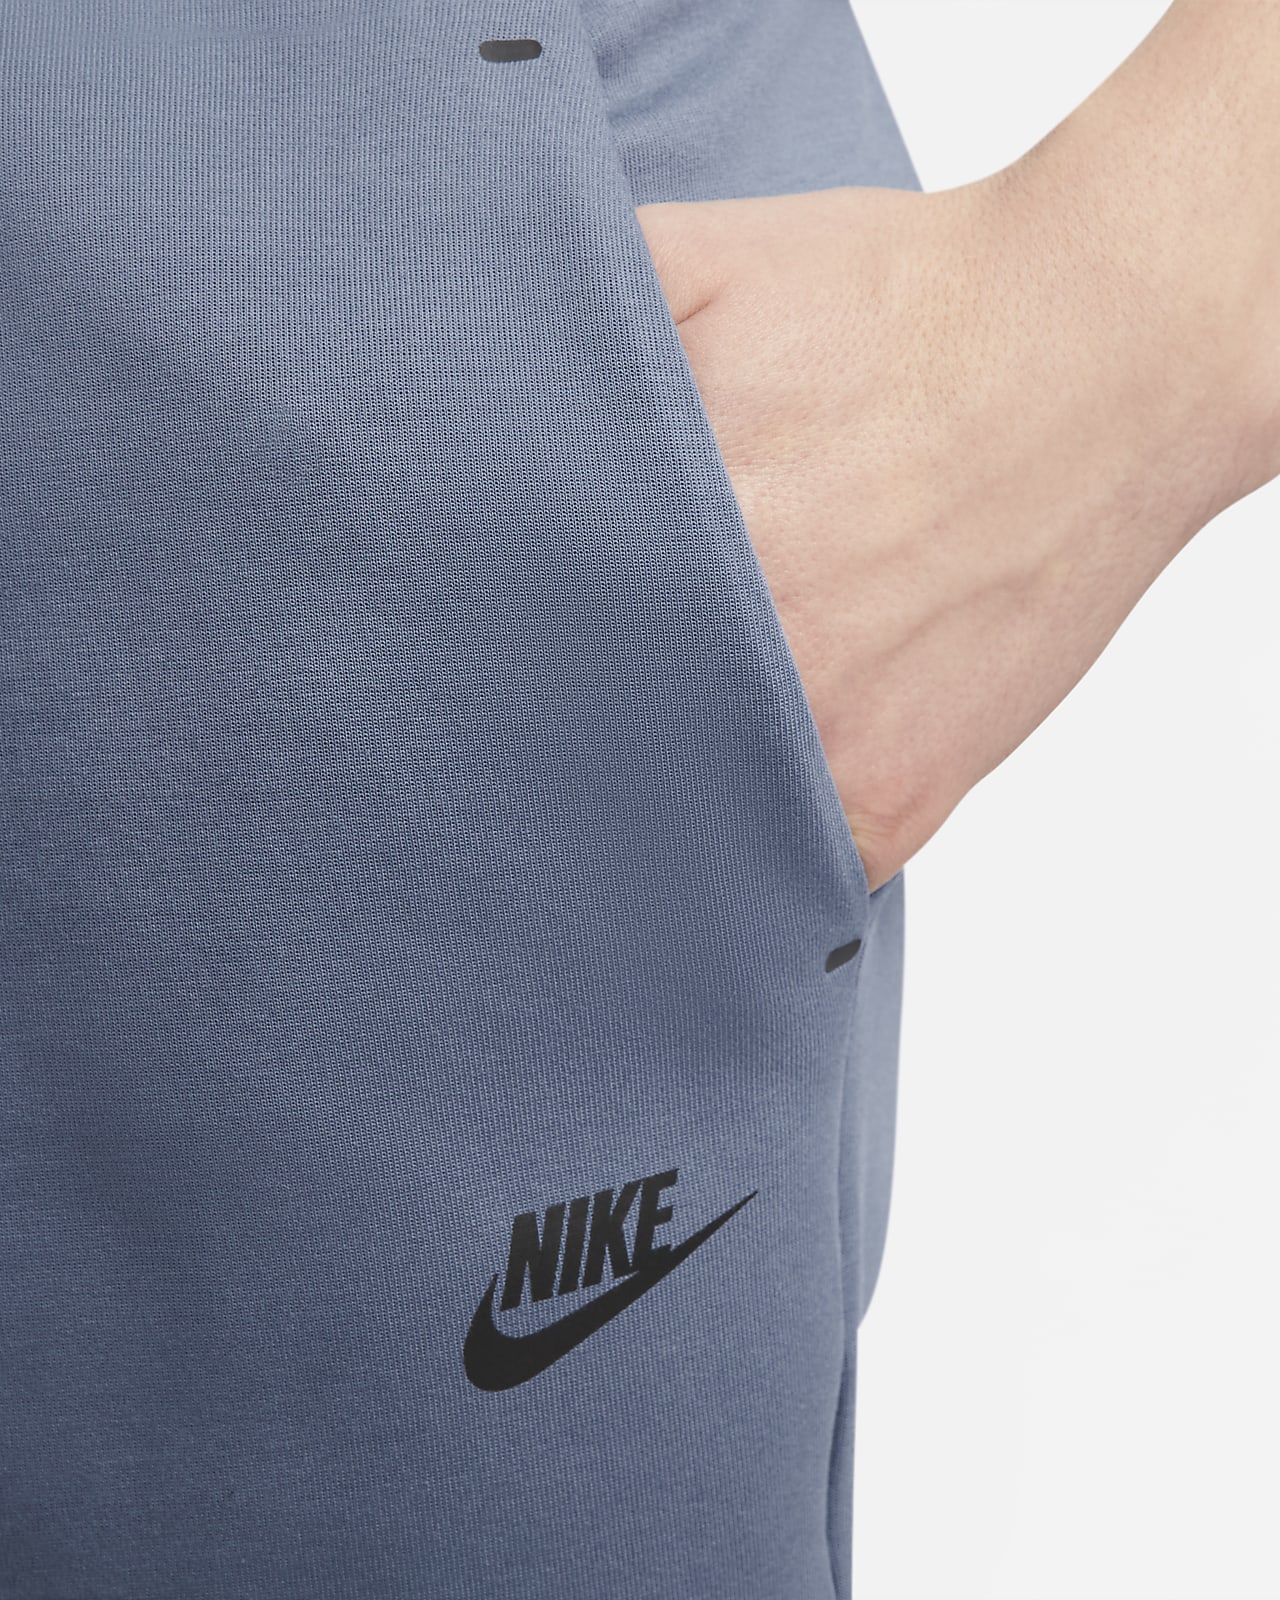 Nike Sportswear Tech Fleece Joggers - Men's